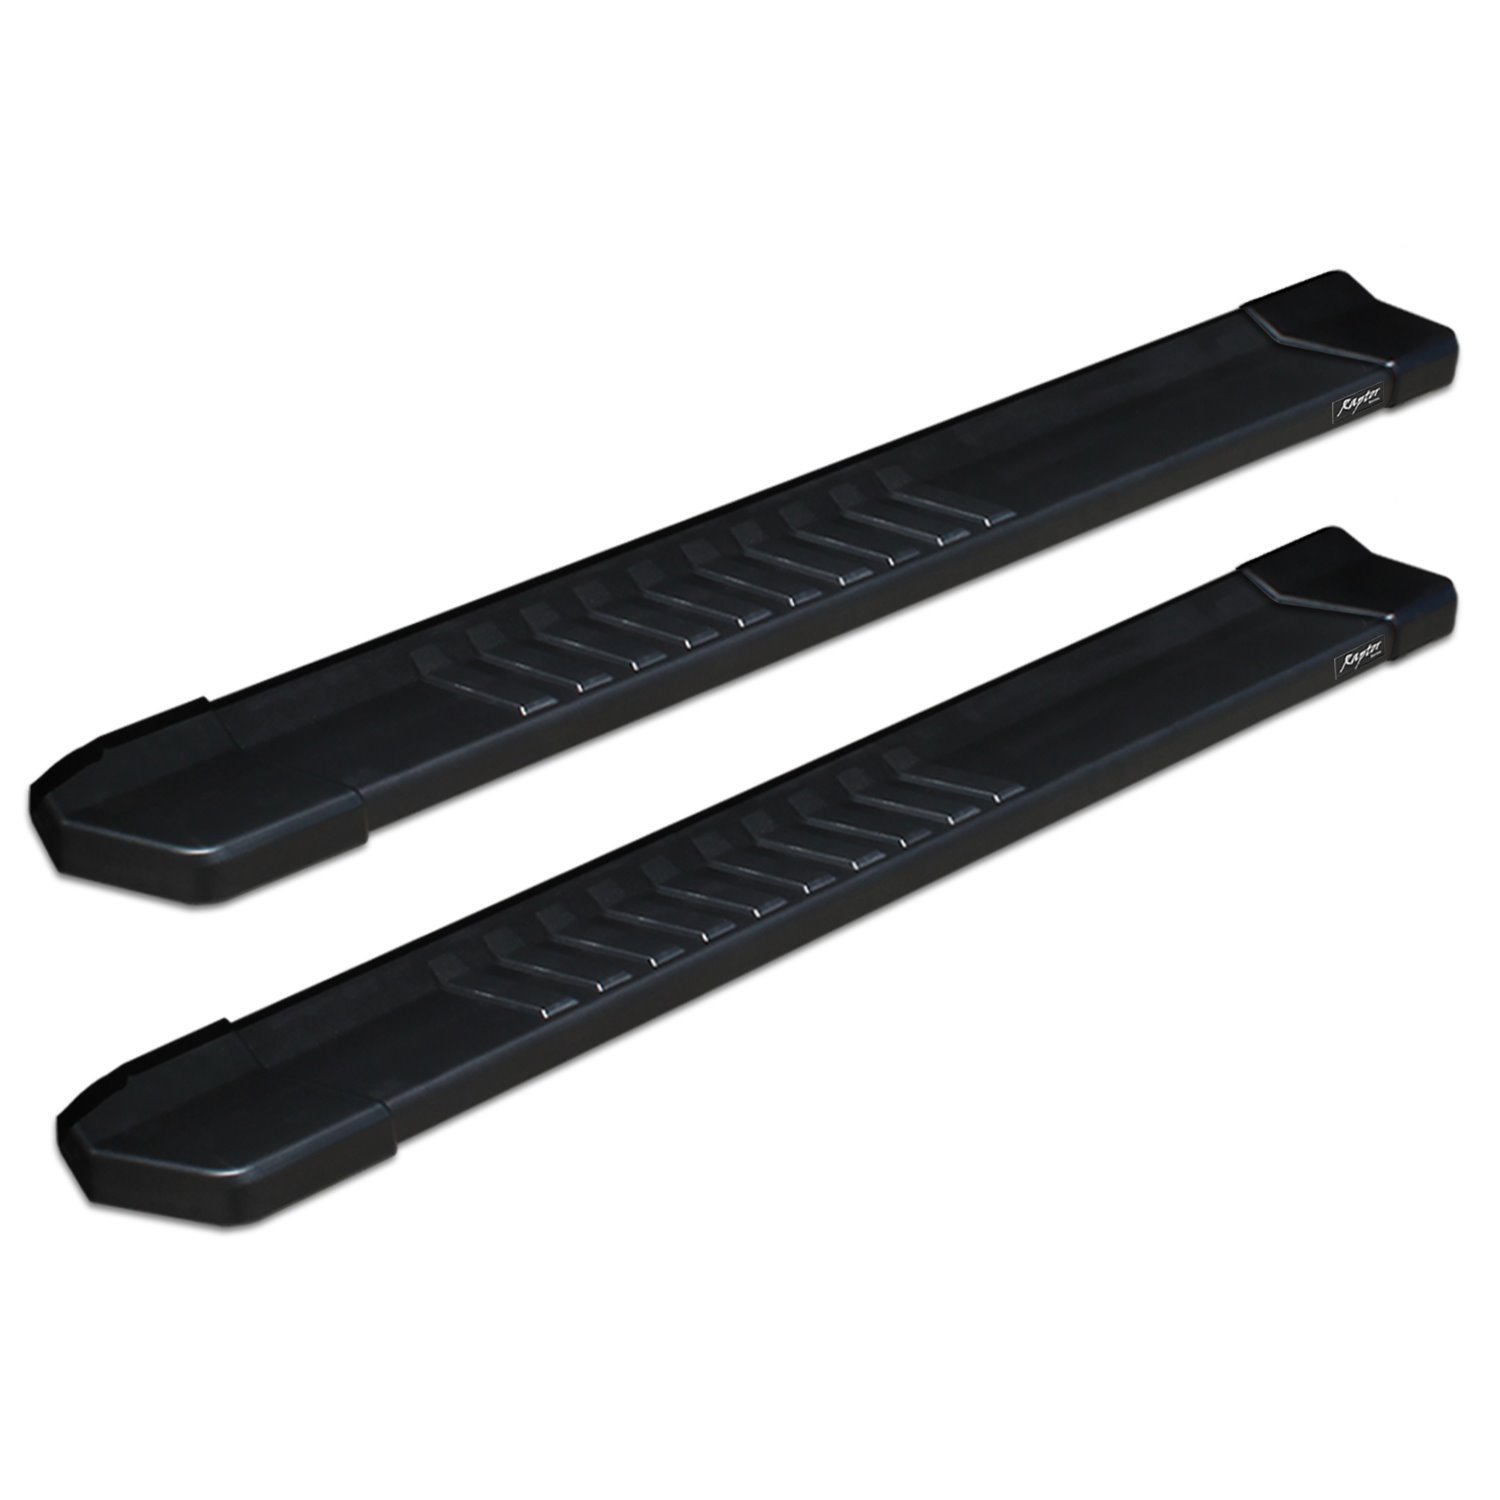 1702-0220BT 6 in OEM Style Slide Track Running Boards, Black Aluminum, Fits Select Dodge/Ram 1500/2500/3500 Regular Cab